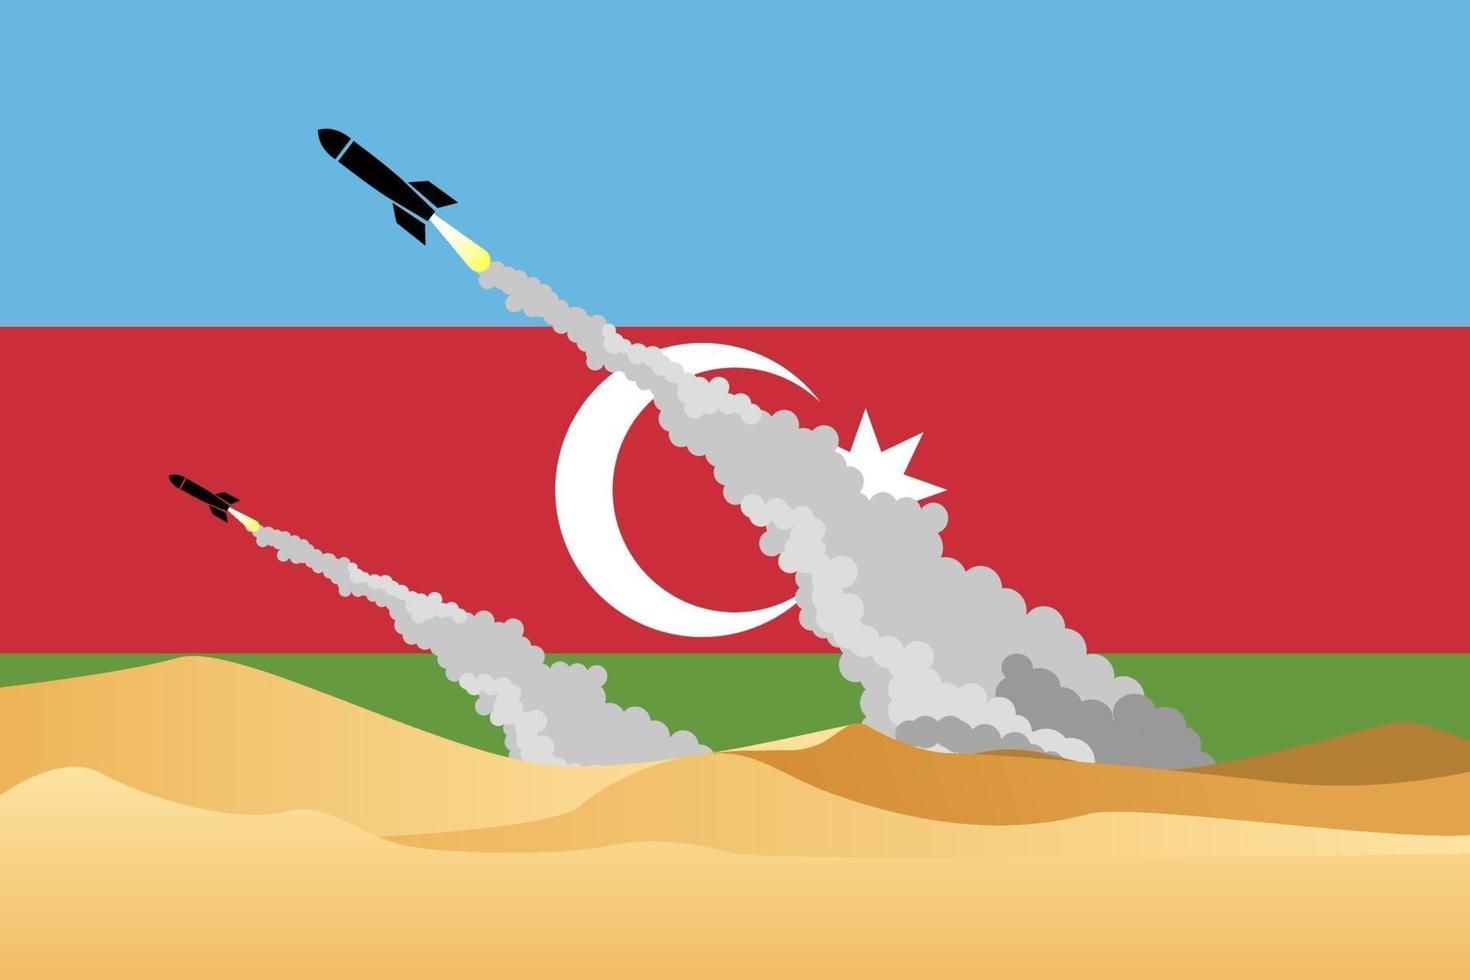 Ilustración de la guerra de la zona desértica disparando misiles en el fondo de la bandera de Azerbaiyán. conflicto armenia-azerbaiyán 2020. crisis del cáucaso. imagen de azerbaiyán de misiles. armenia contra azerbaiyán. vector